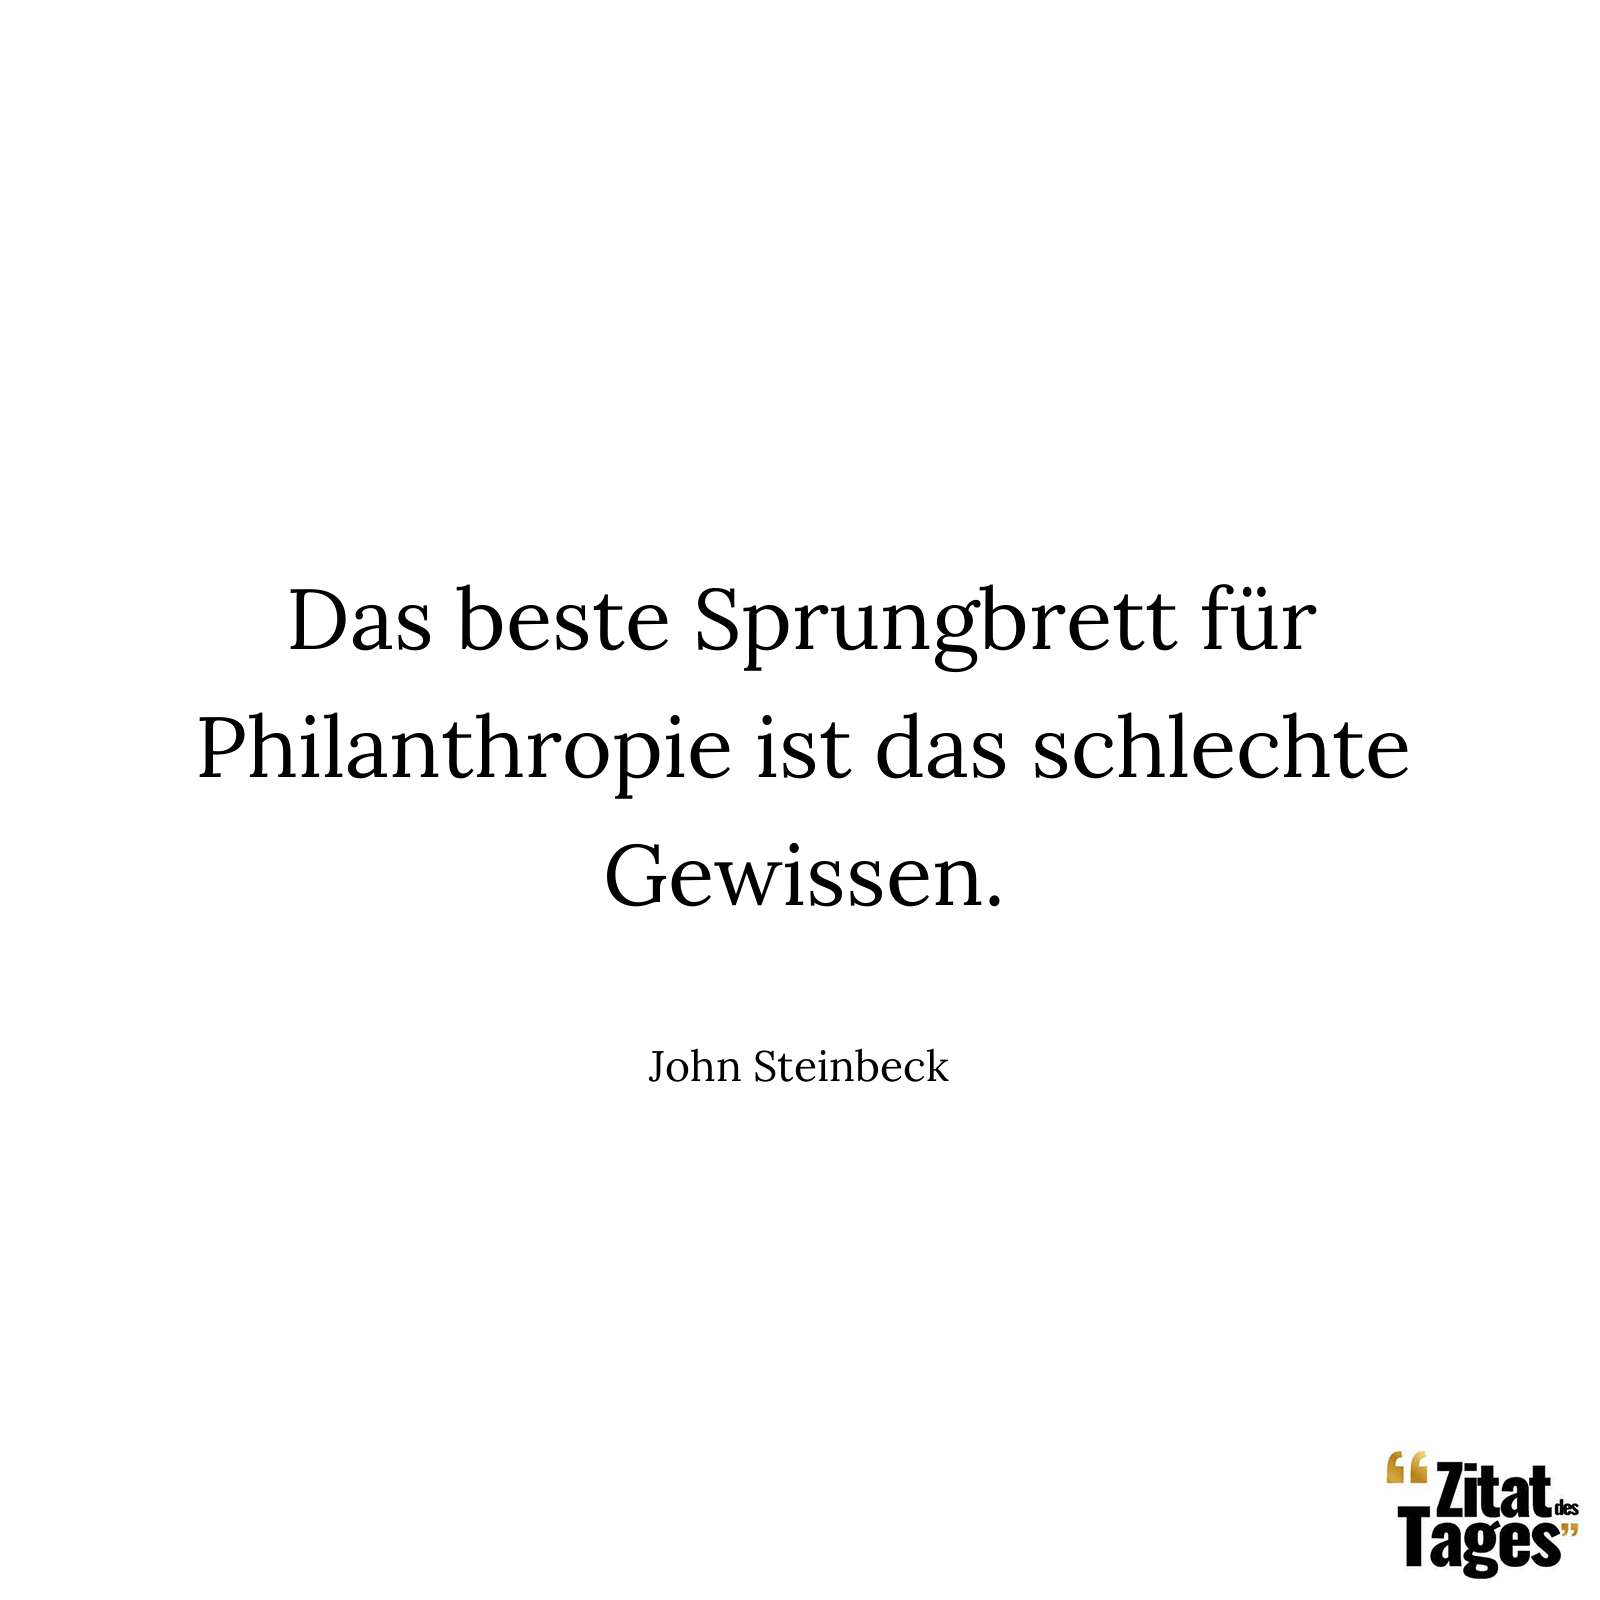 Das beste Sprungbrett für Philanthropie ist das schlechte Gewissen. - John Steinbeck